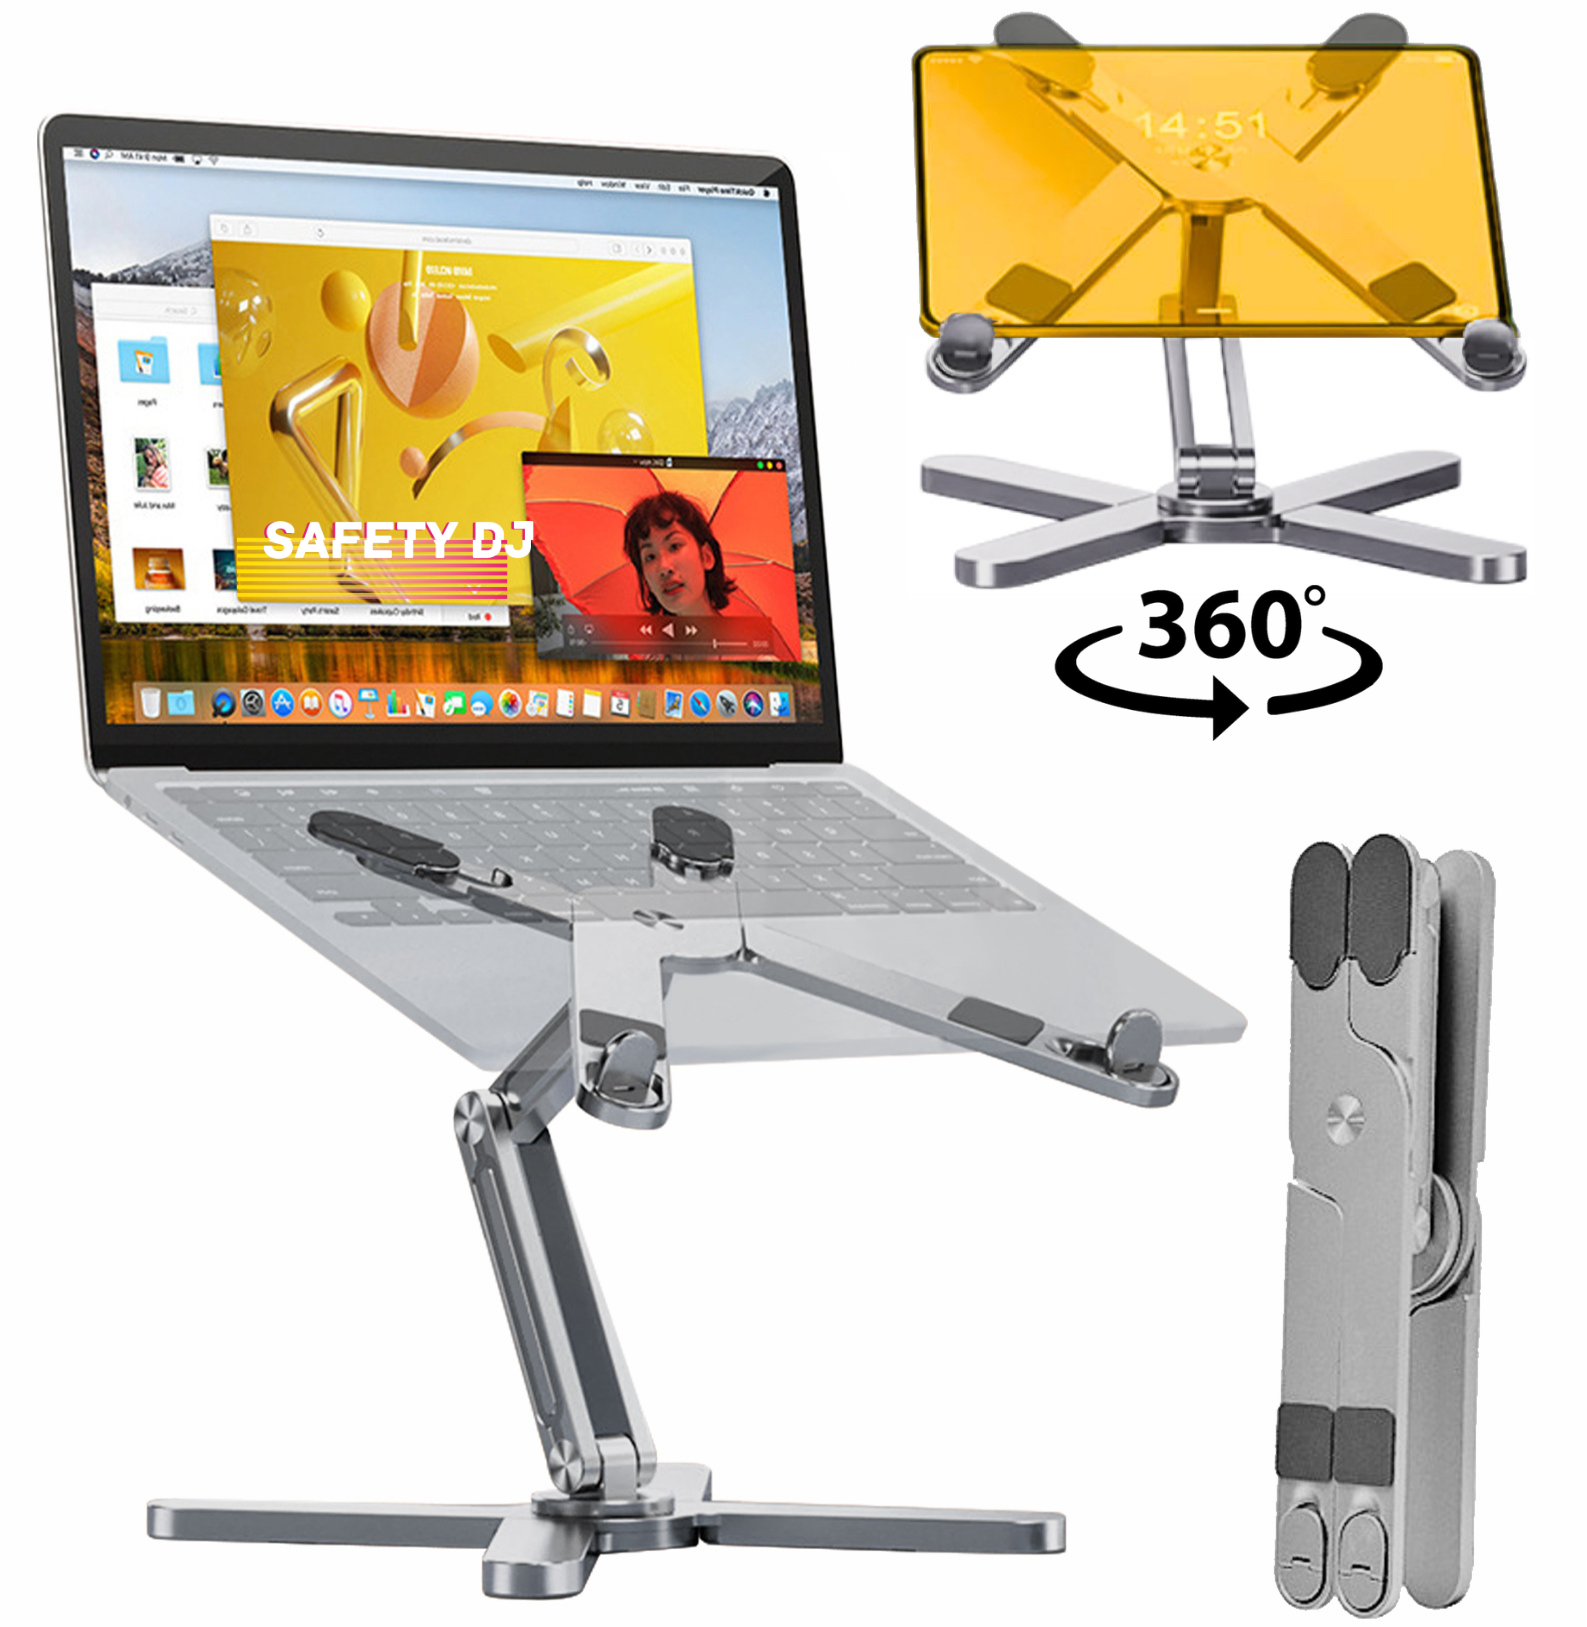 Подставка для ноутбука и планшета Safety DJ складная алюминиевая с вращением на 360 градусов регулировкой высоты и угла наклона (серебристая)